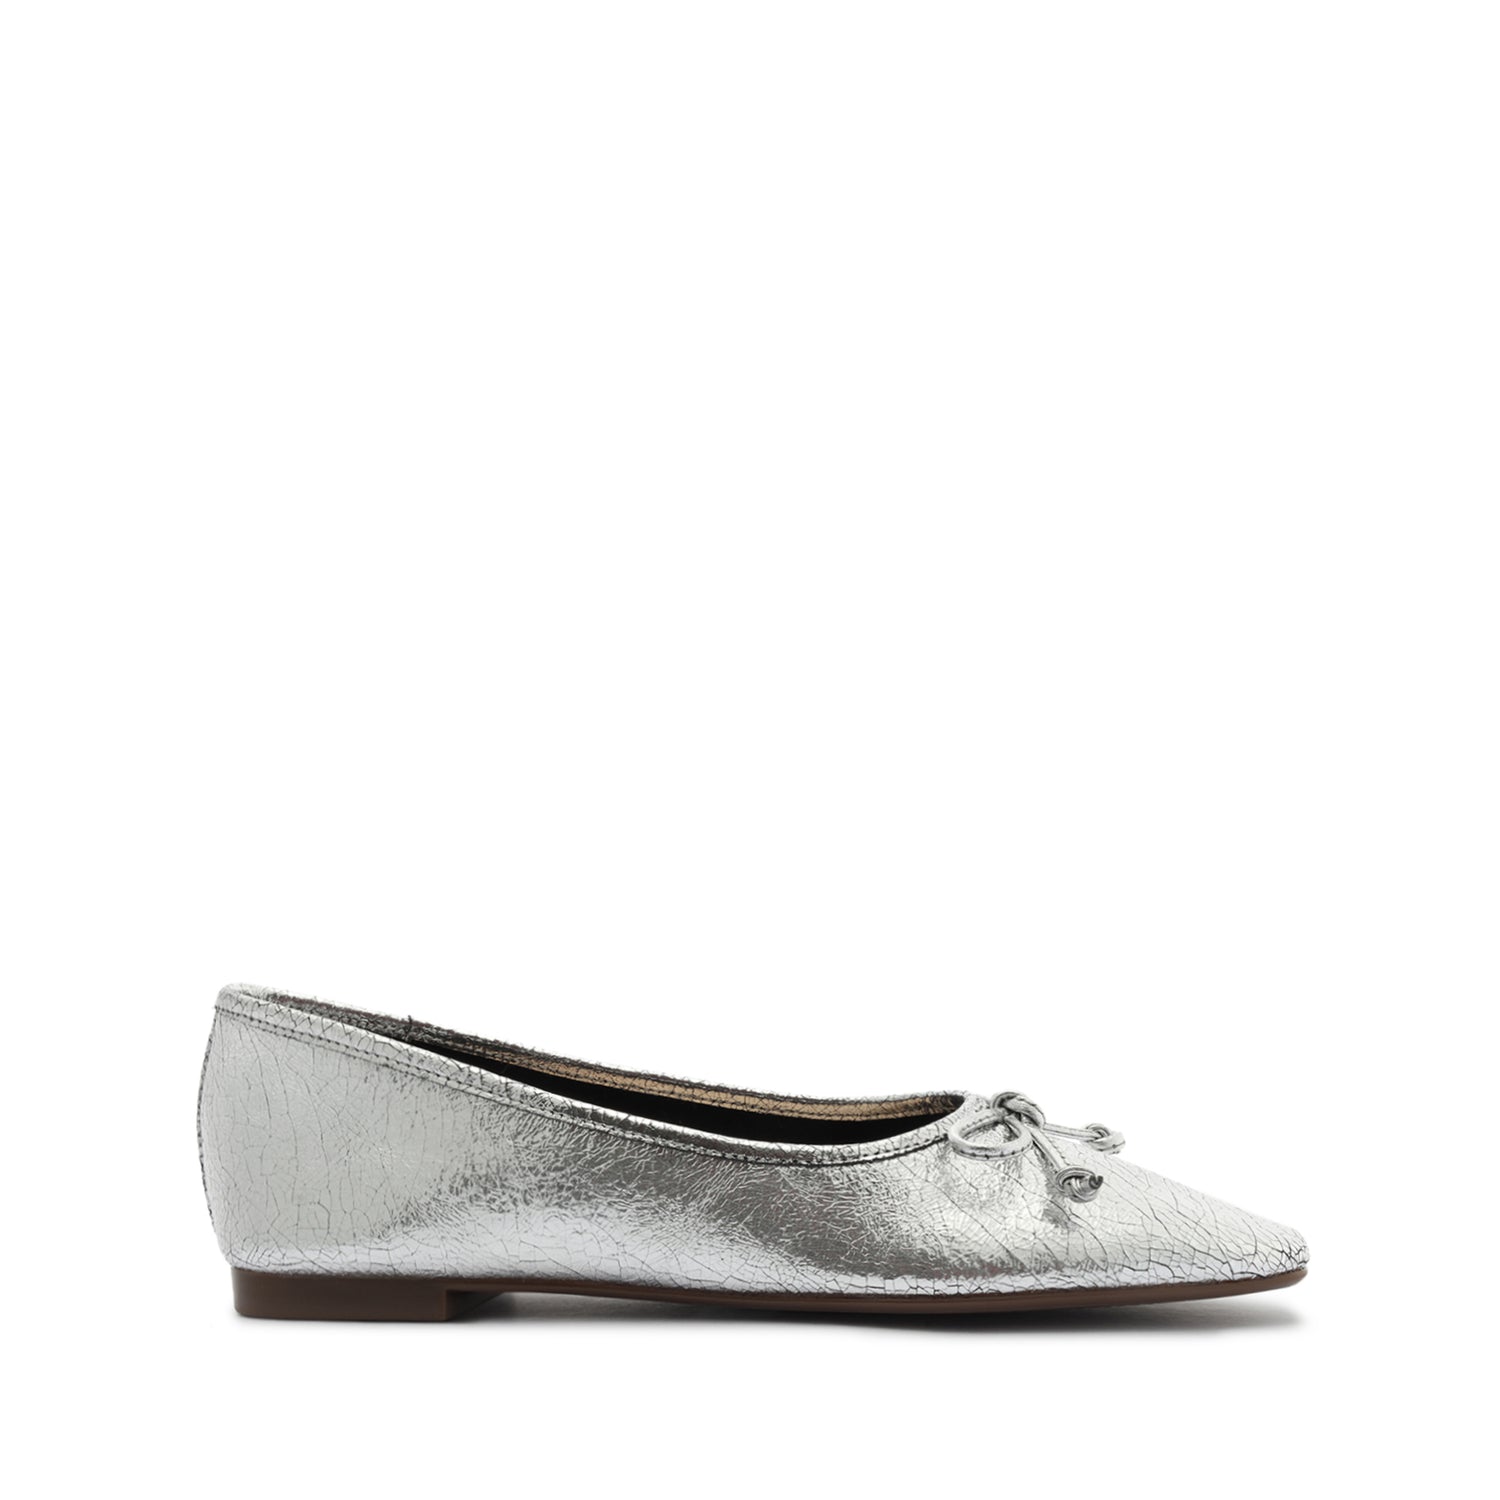 Arissa Ballet Flat with Bow Tie Detail in Metallic | Schutz Shoes – SCHUTZ